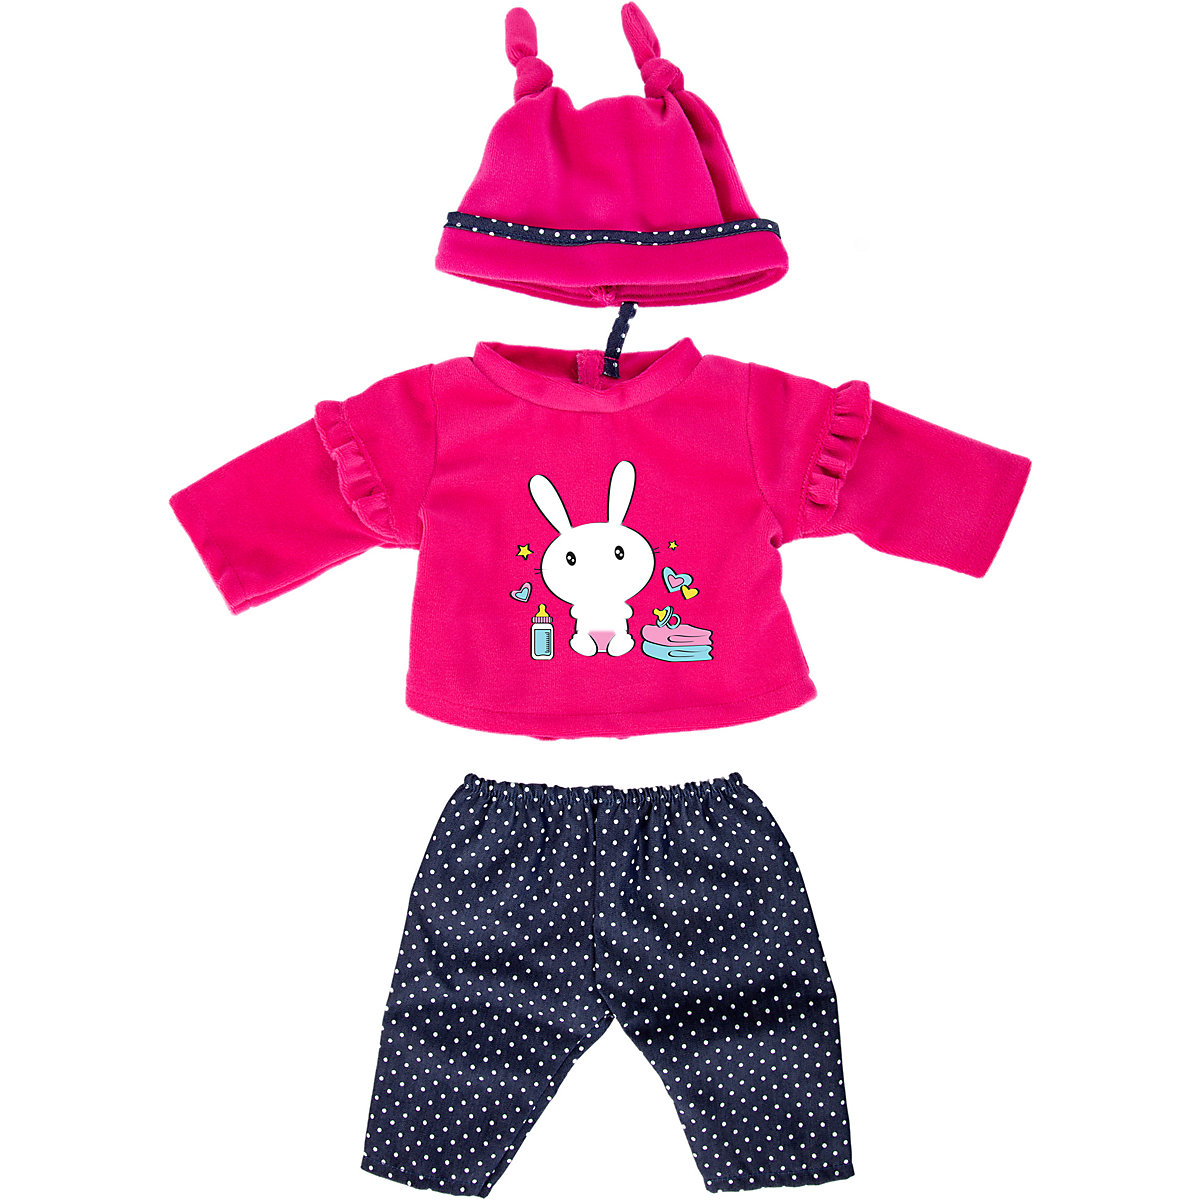 BAYER Kleider für Puppen 33-38 cm: 3-tlg. Set Hose Oberteil Mütze pink/dunkelblau